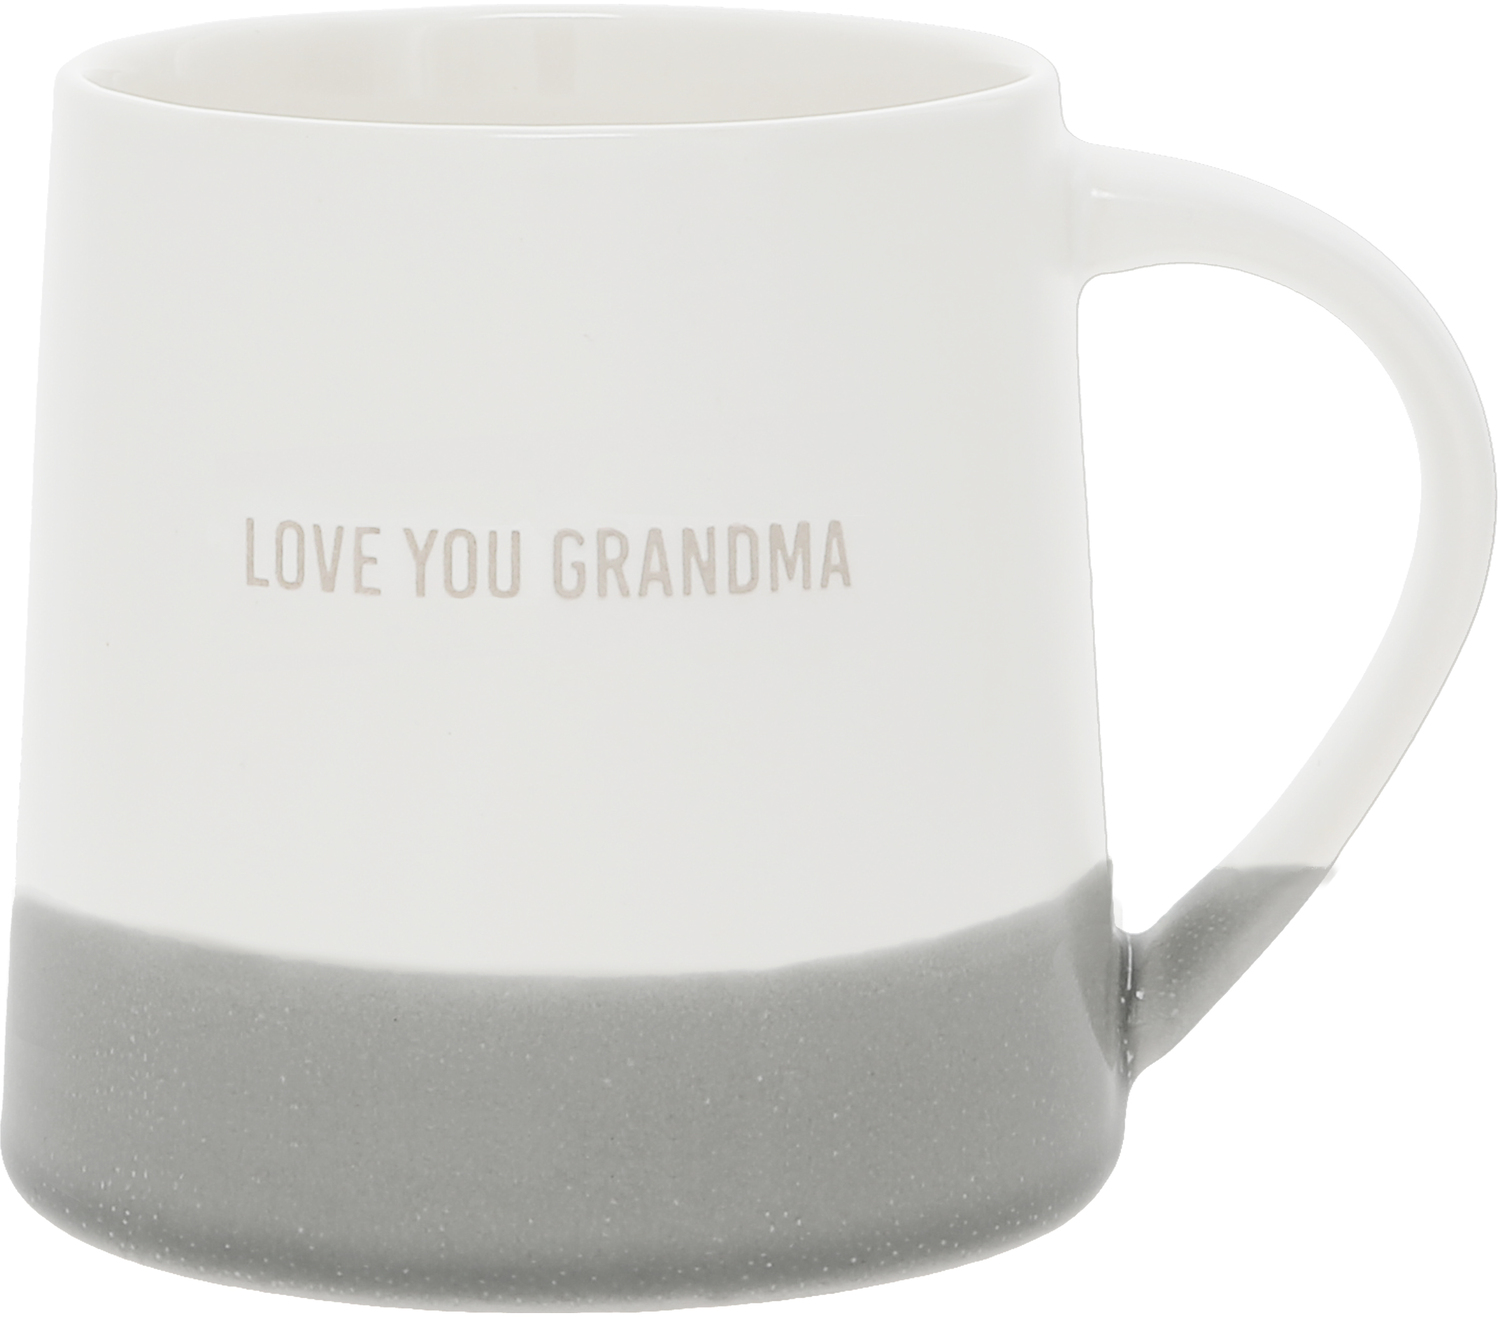 Love You Grandma by Love You - Love You Grandma - 17 oz Mug